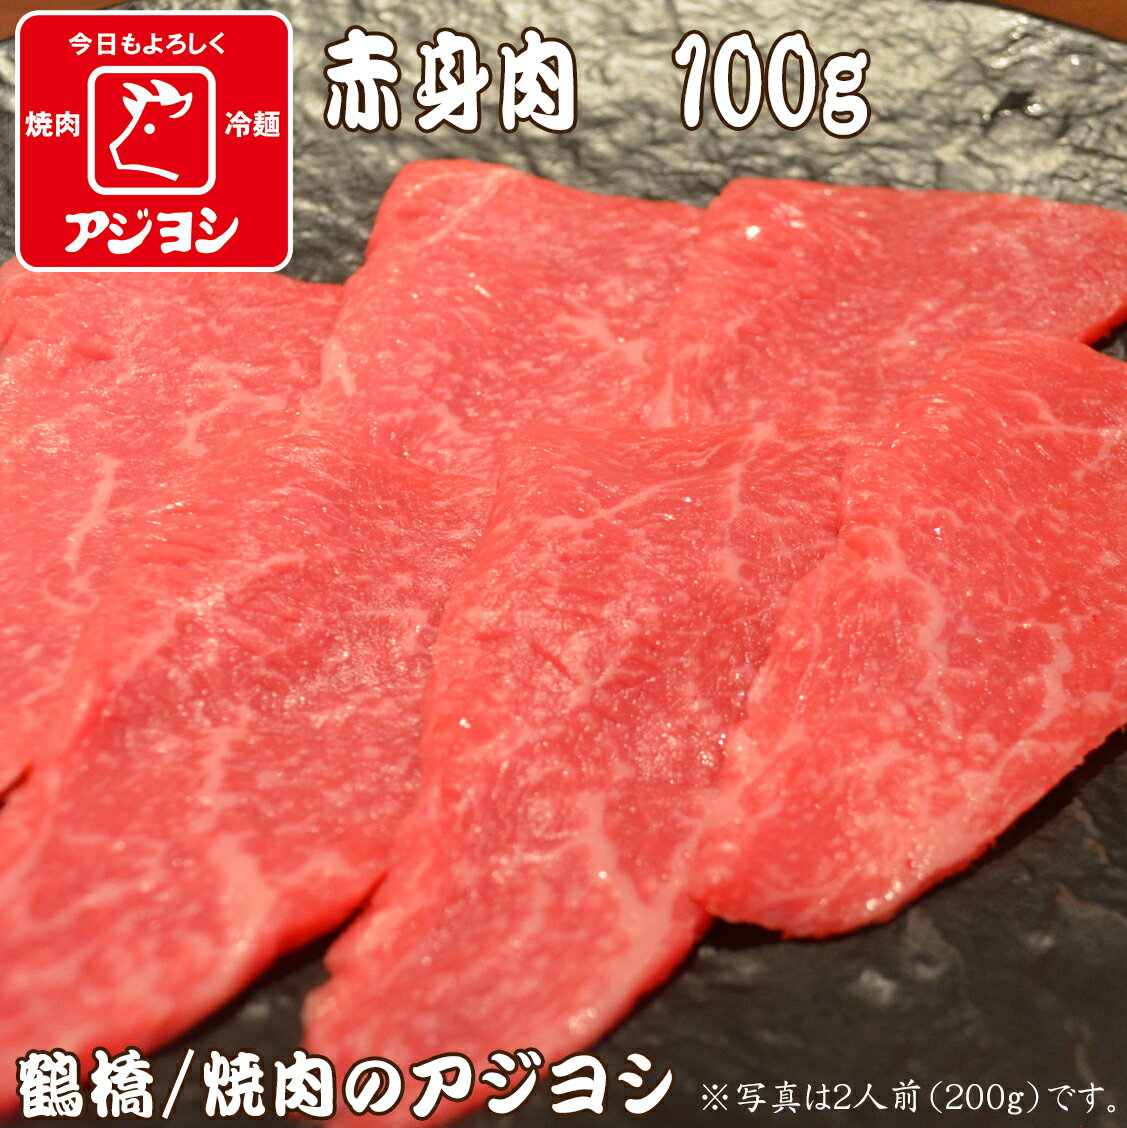 【鶴橋・焼肉のアジヨシ】牛肉 国産 赤身肉100g